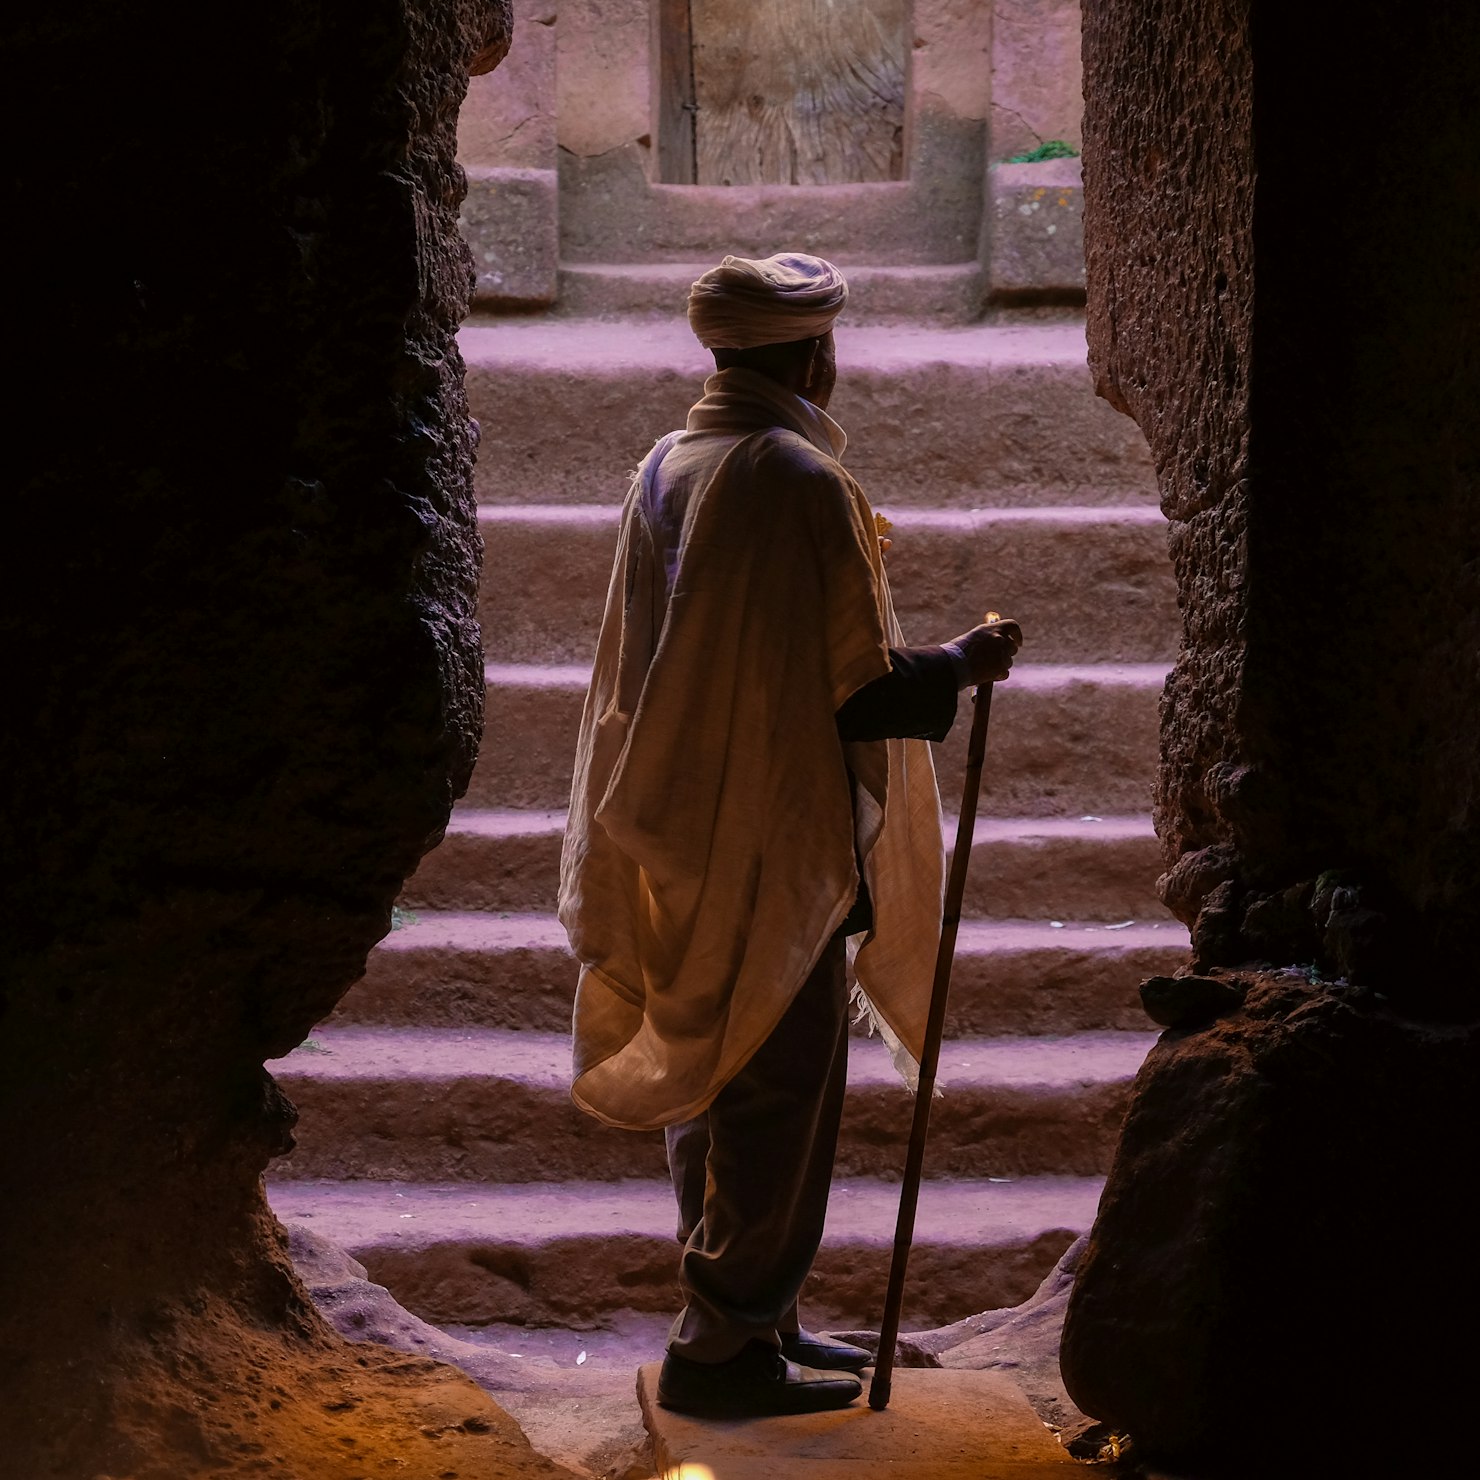 Film in Ethiopia